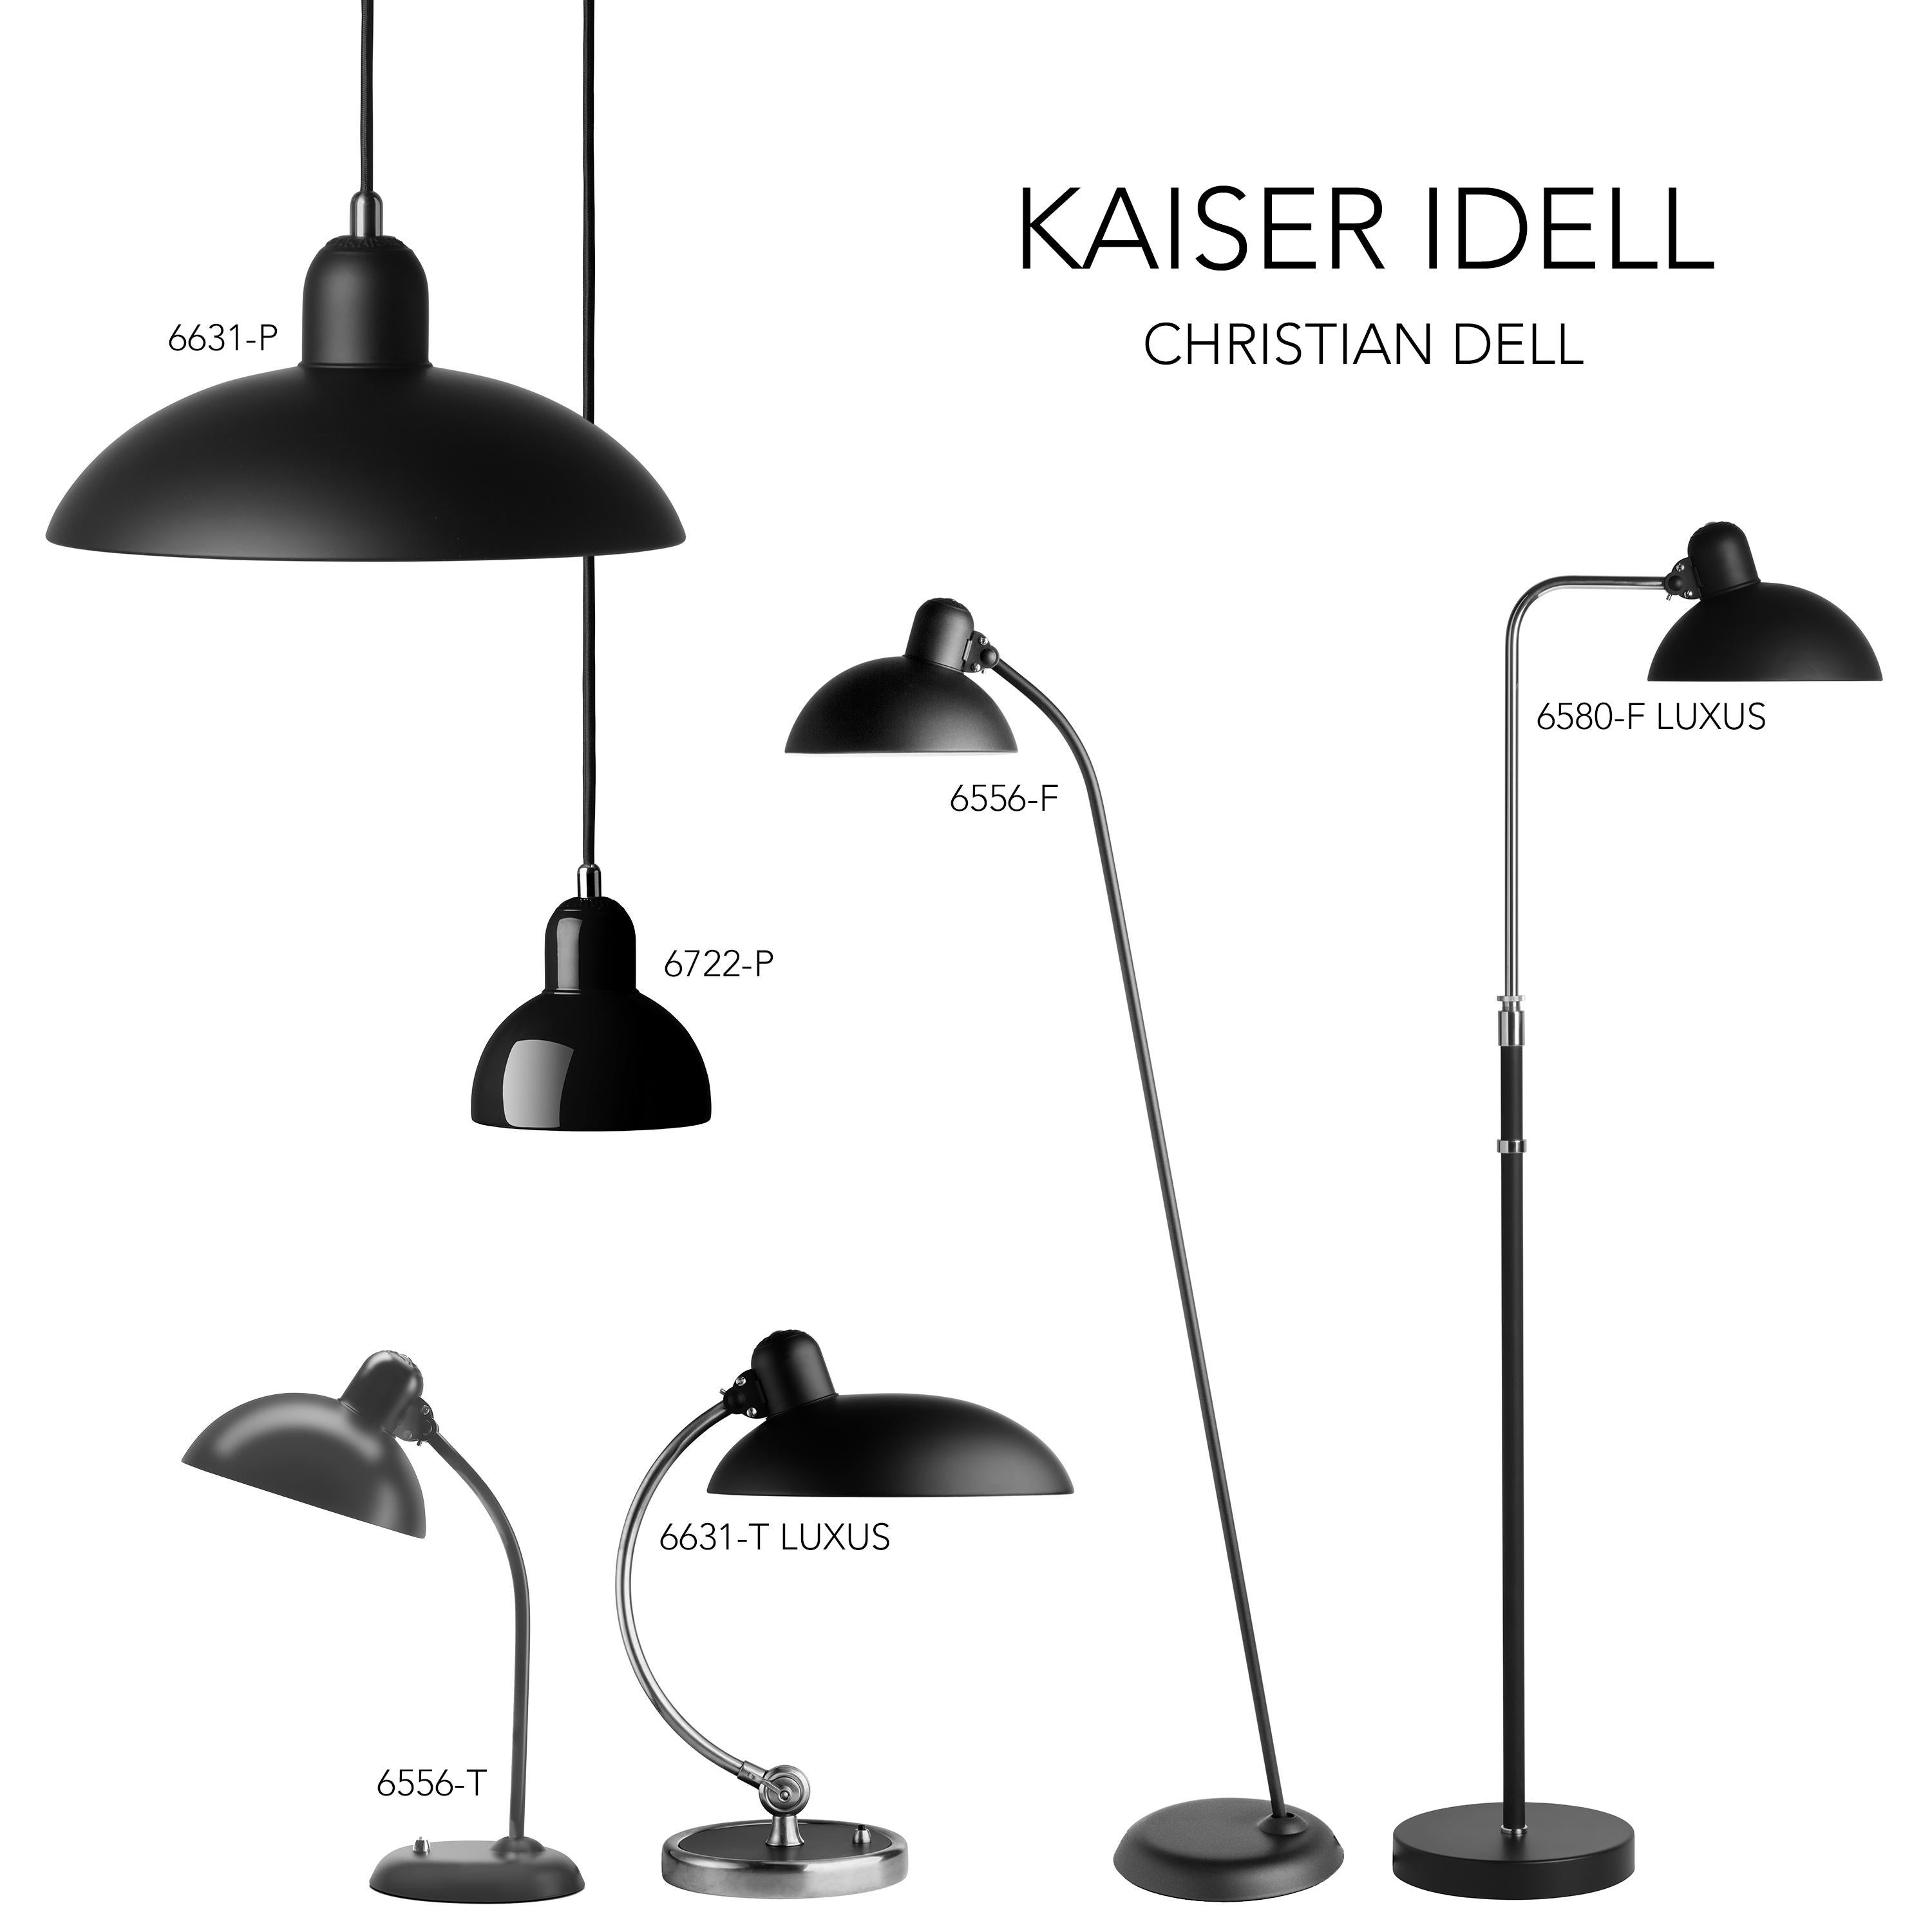 Métal Christian Dell 'Kaiser Idell 6580-F' lampadaire pour Fritz Hansen en Fritz White brillant en vente